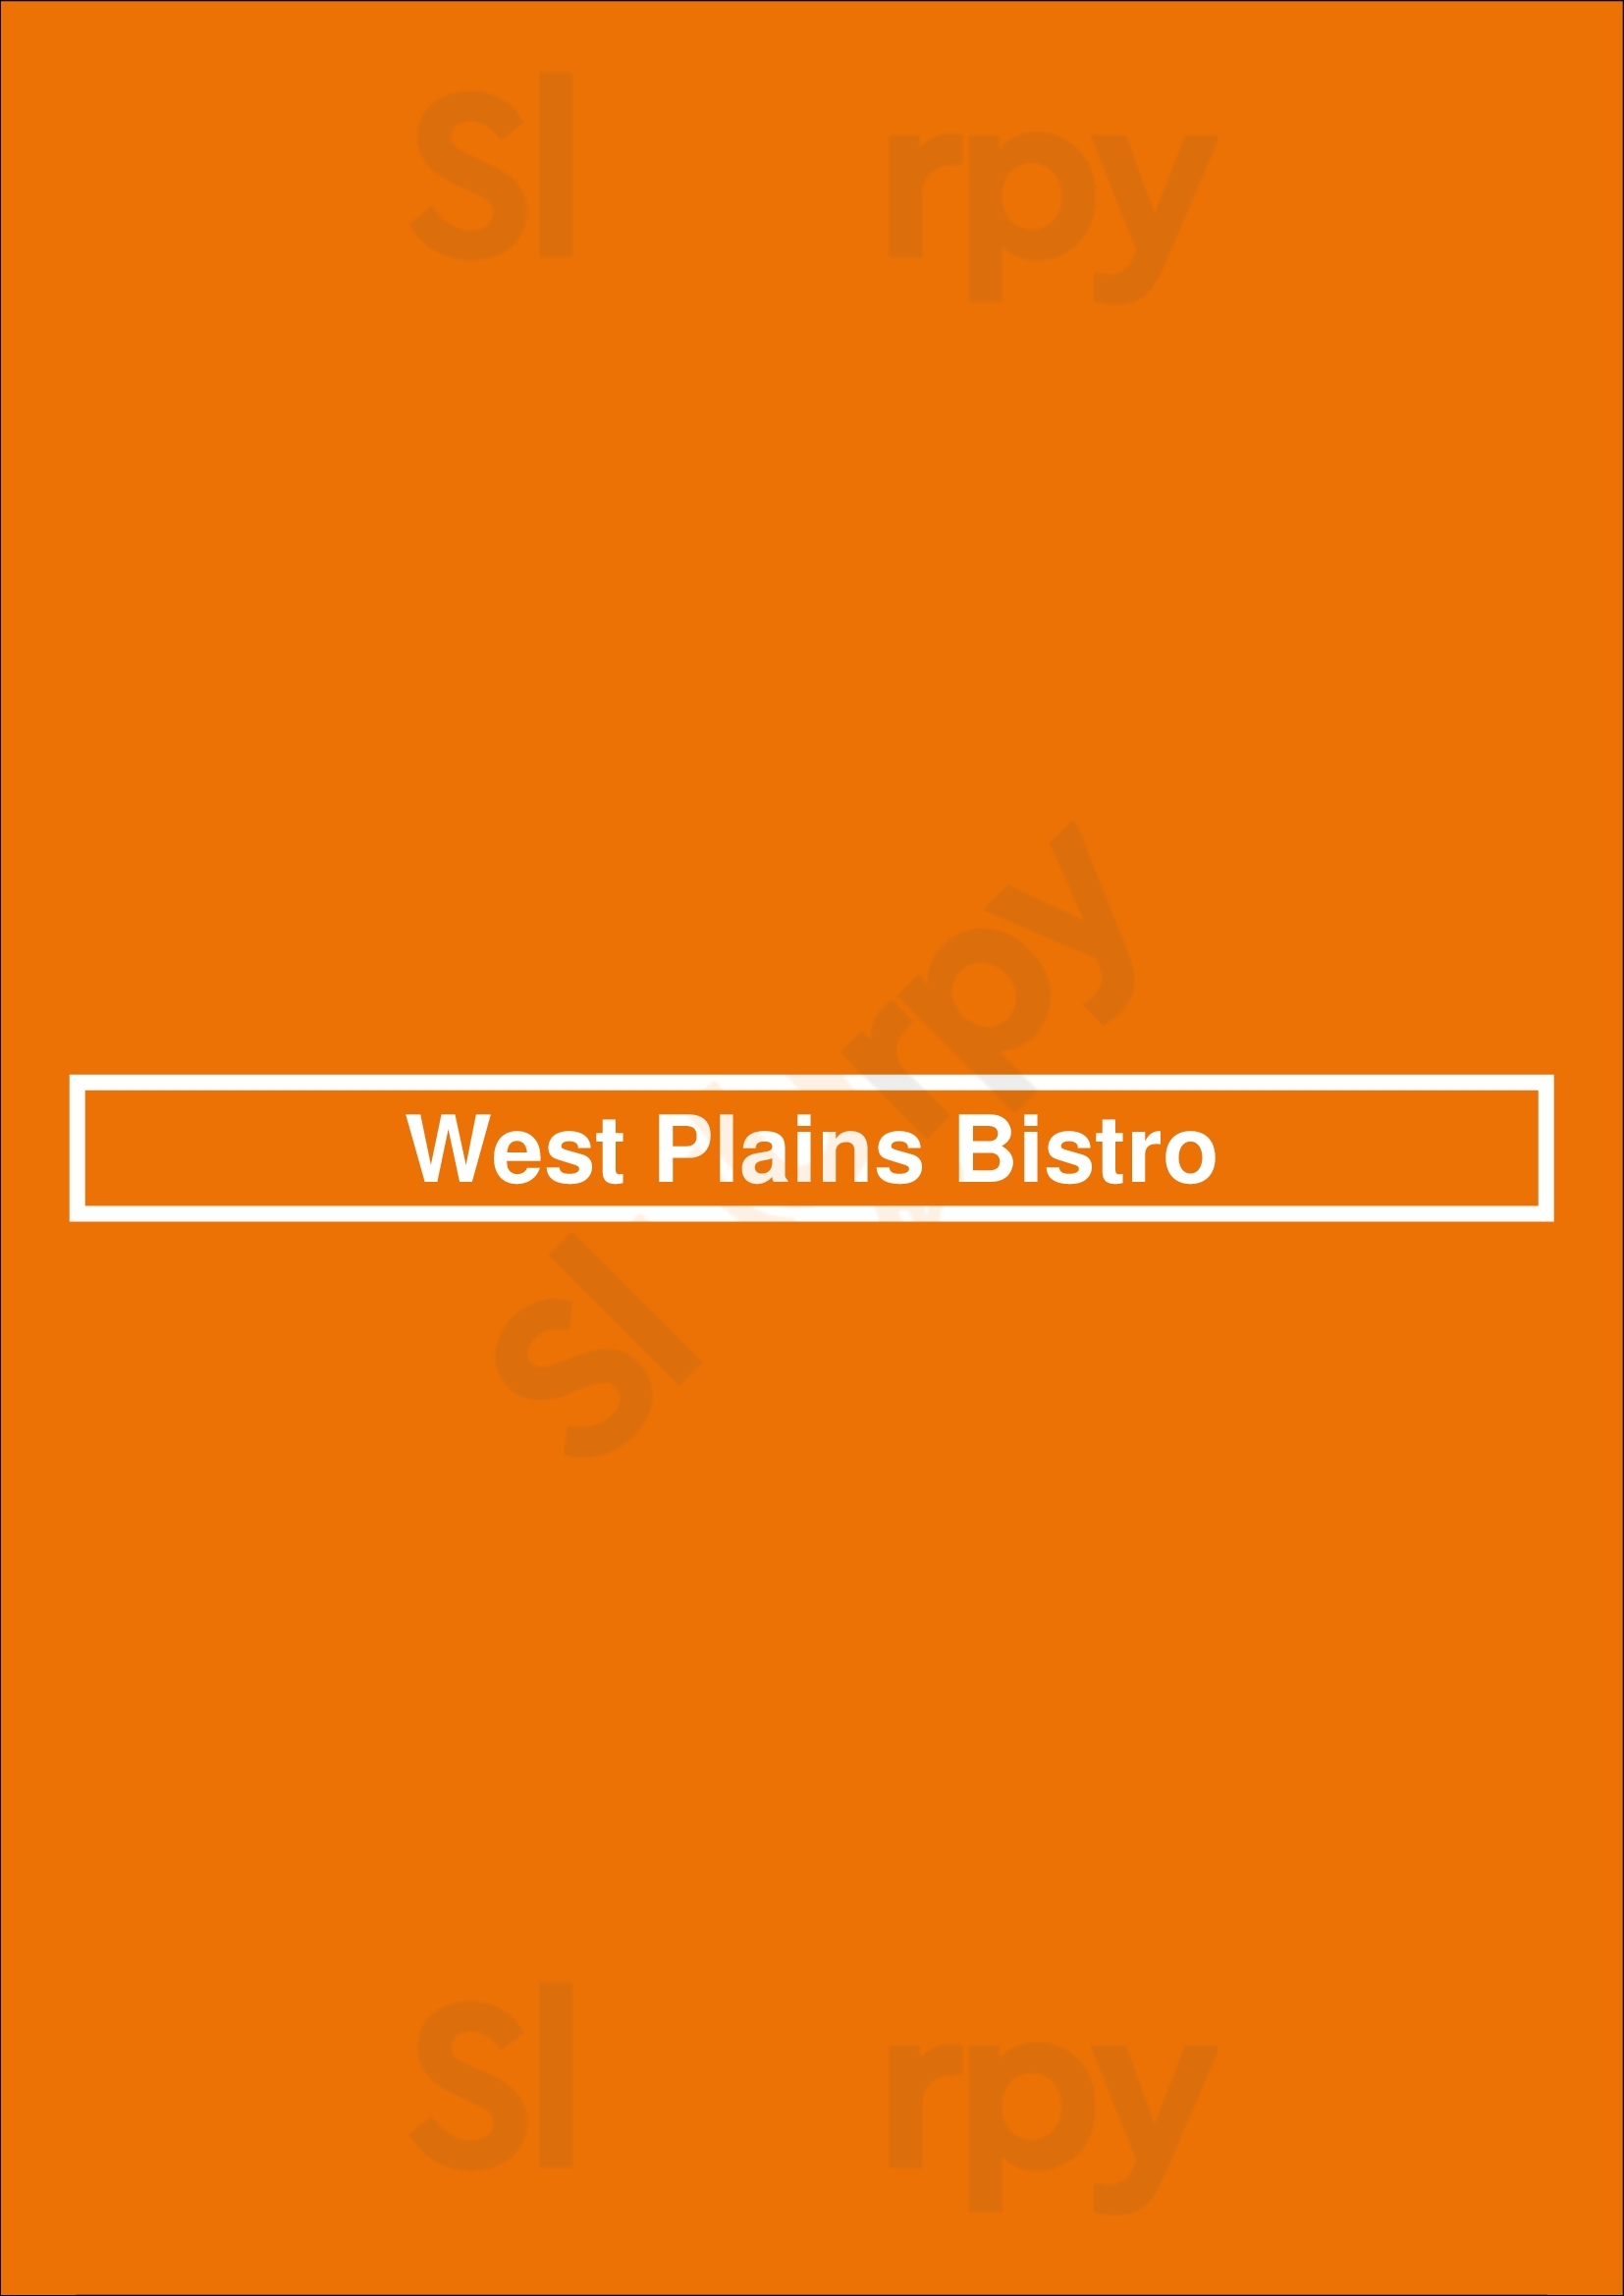 West Plains Bistro Burlington Menu - 1